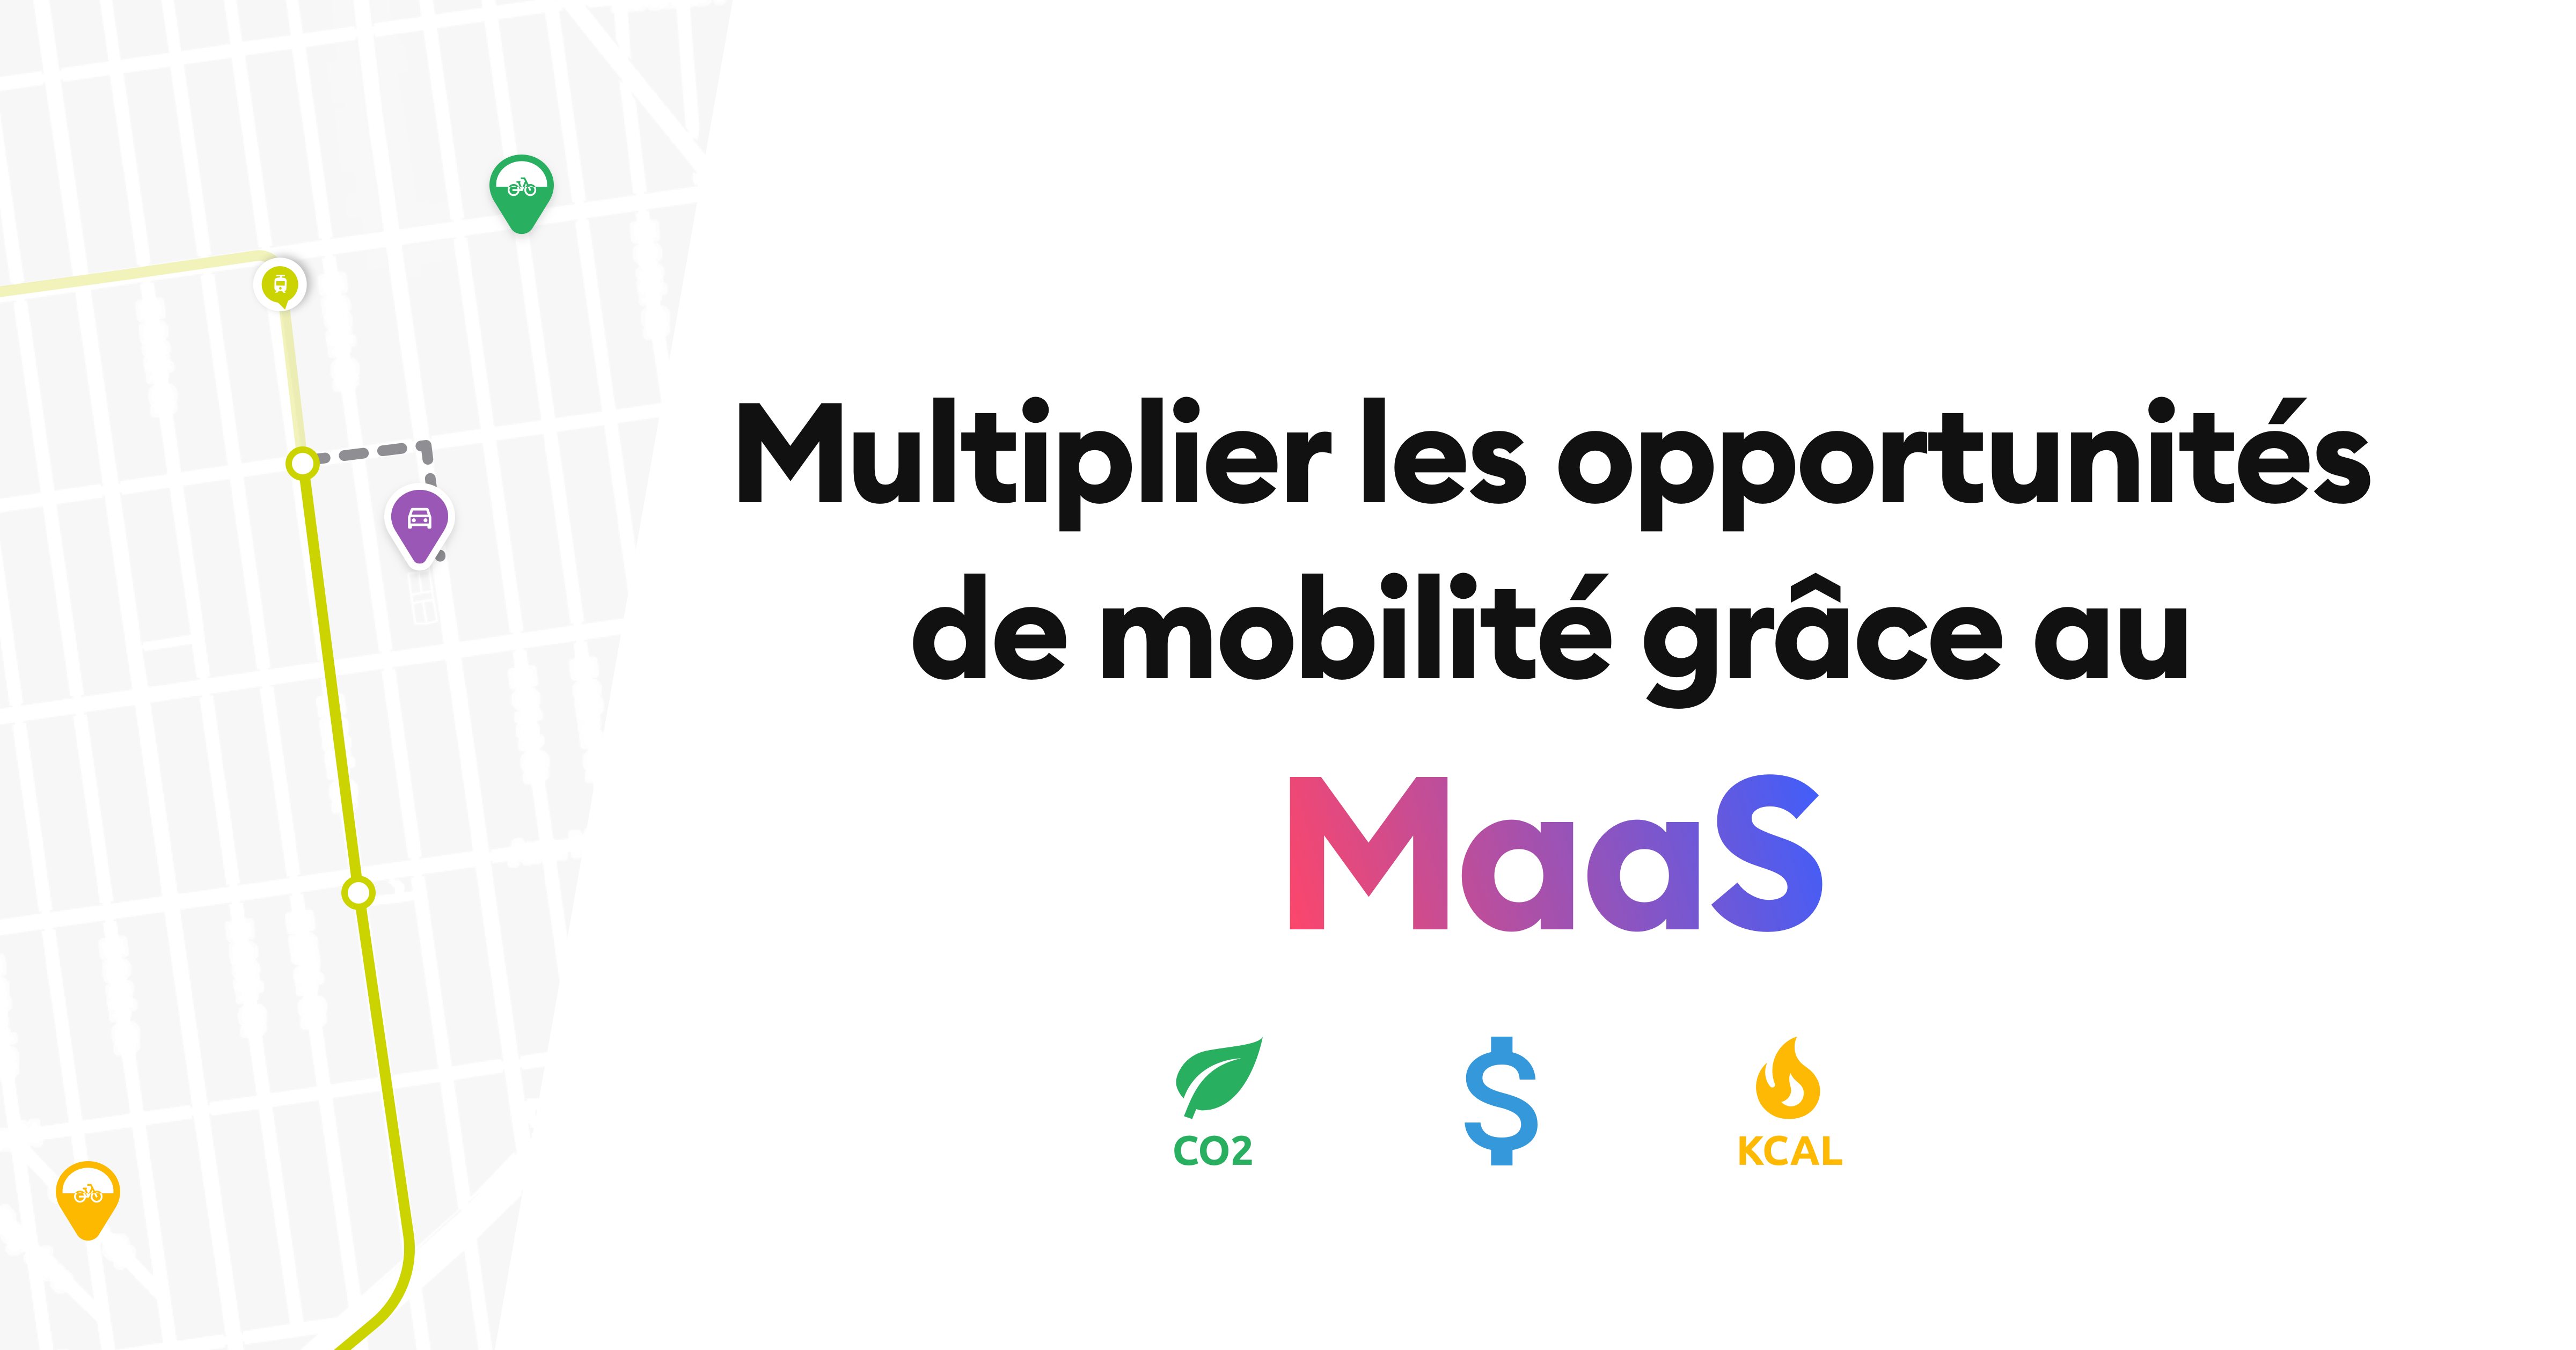 Multiplier les opportunités de mobilités grâce au MaaS